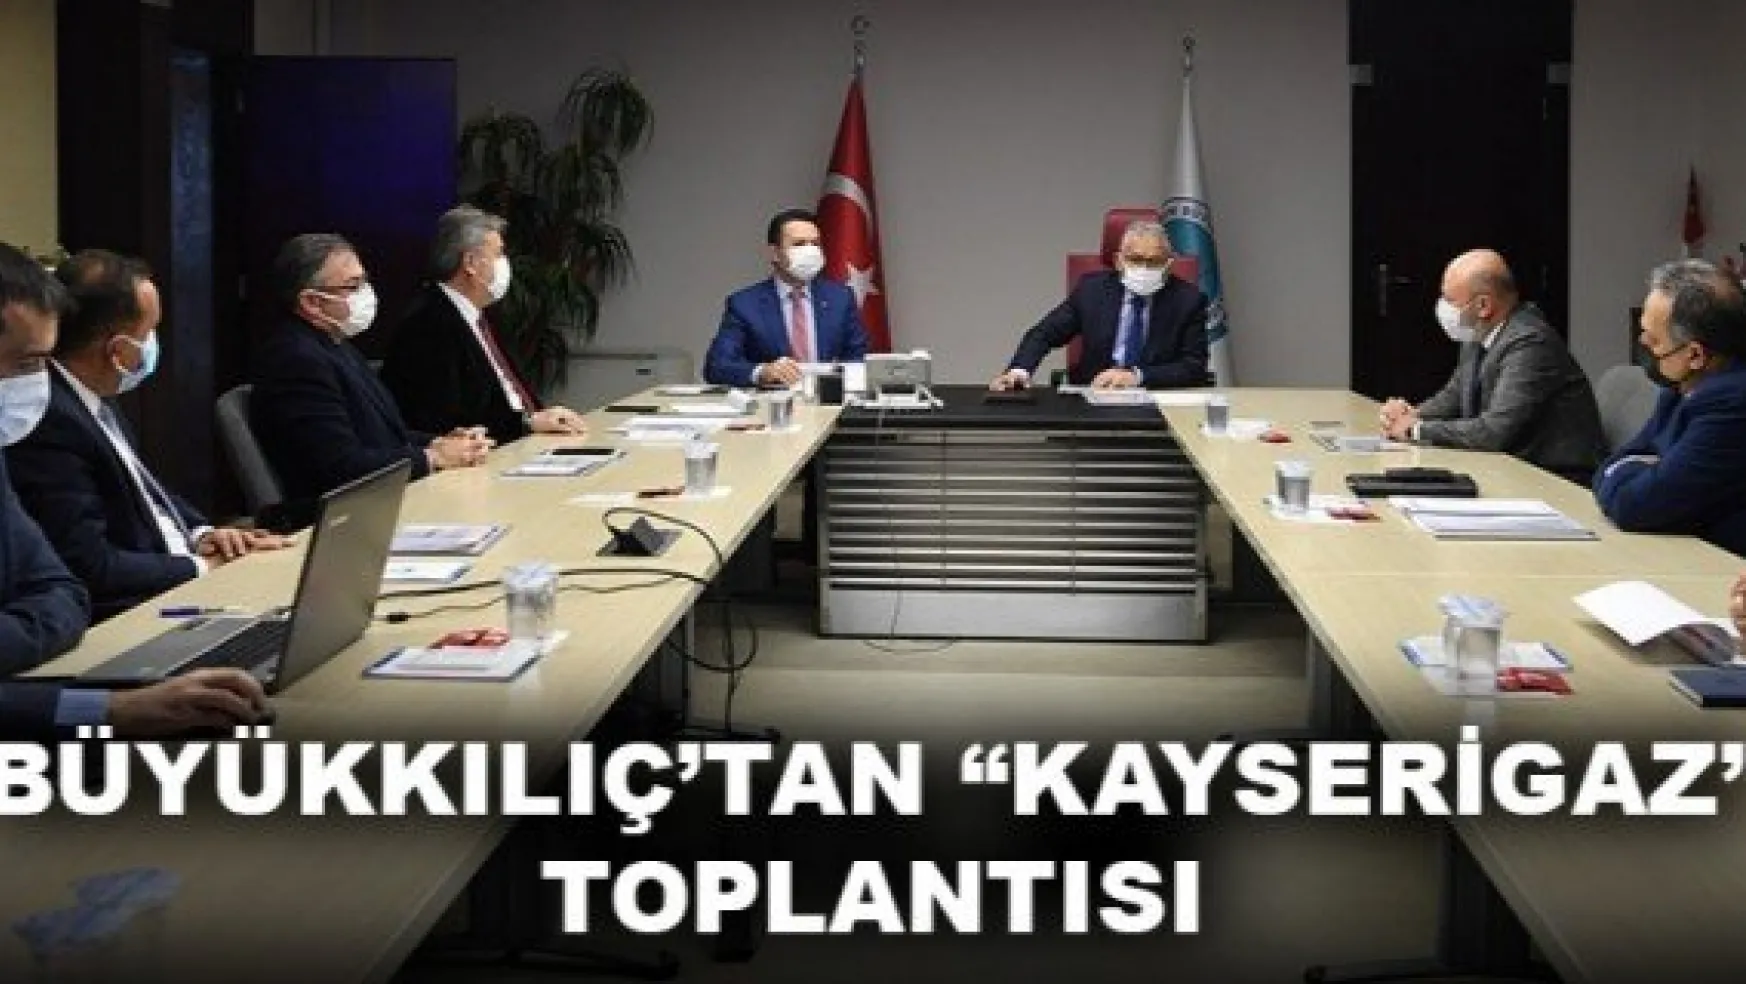 BÜYÜKKILIÇ'TAN 'KAYSERİGAZ' TOPLANTISI